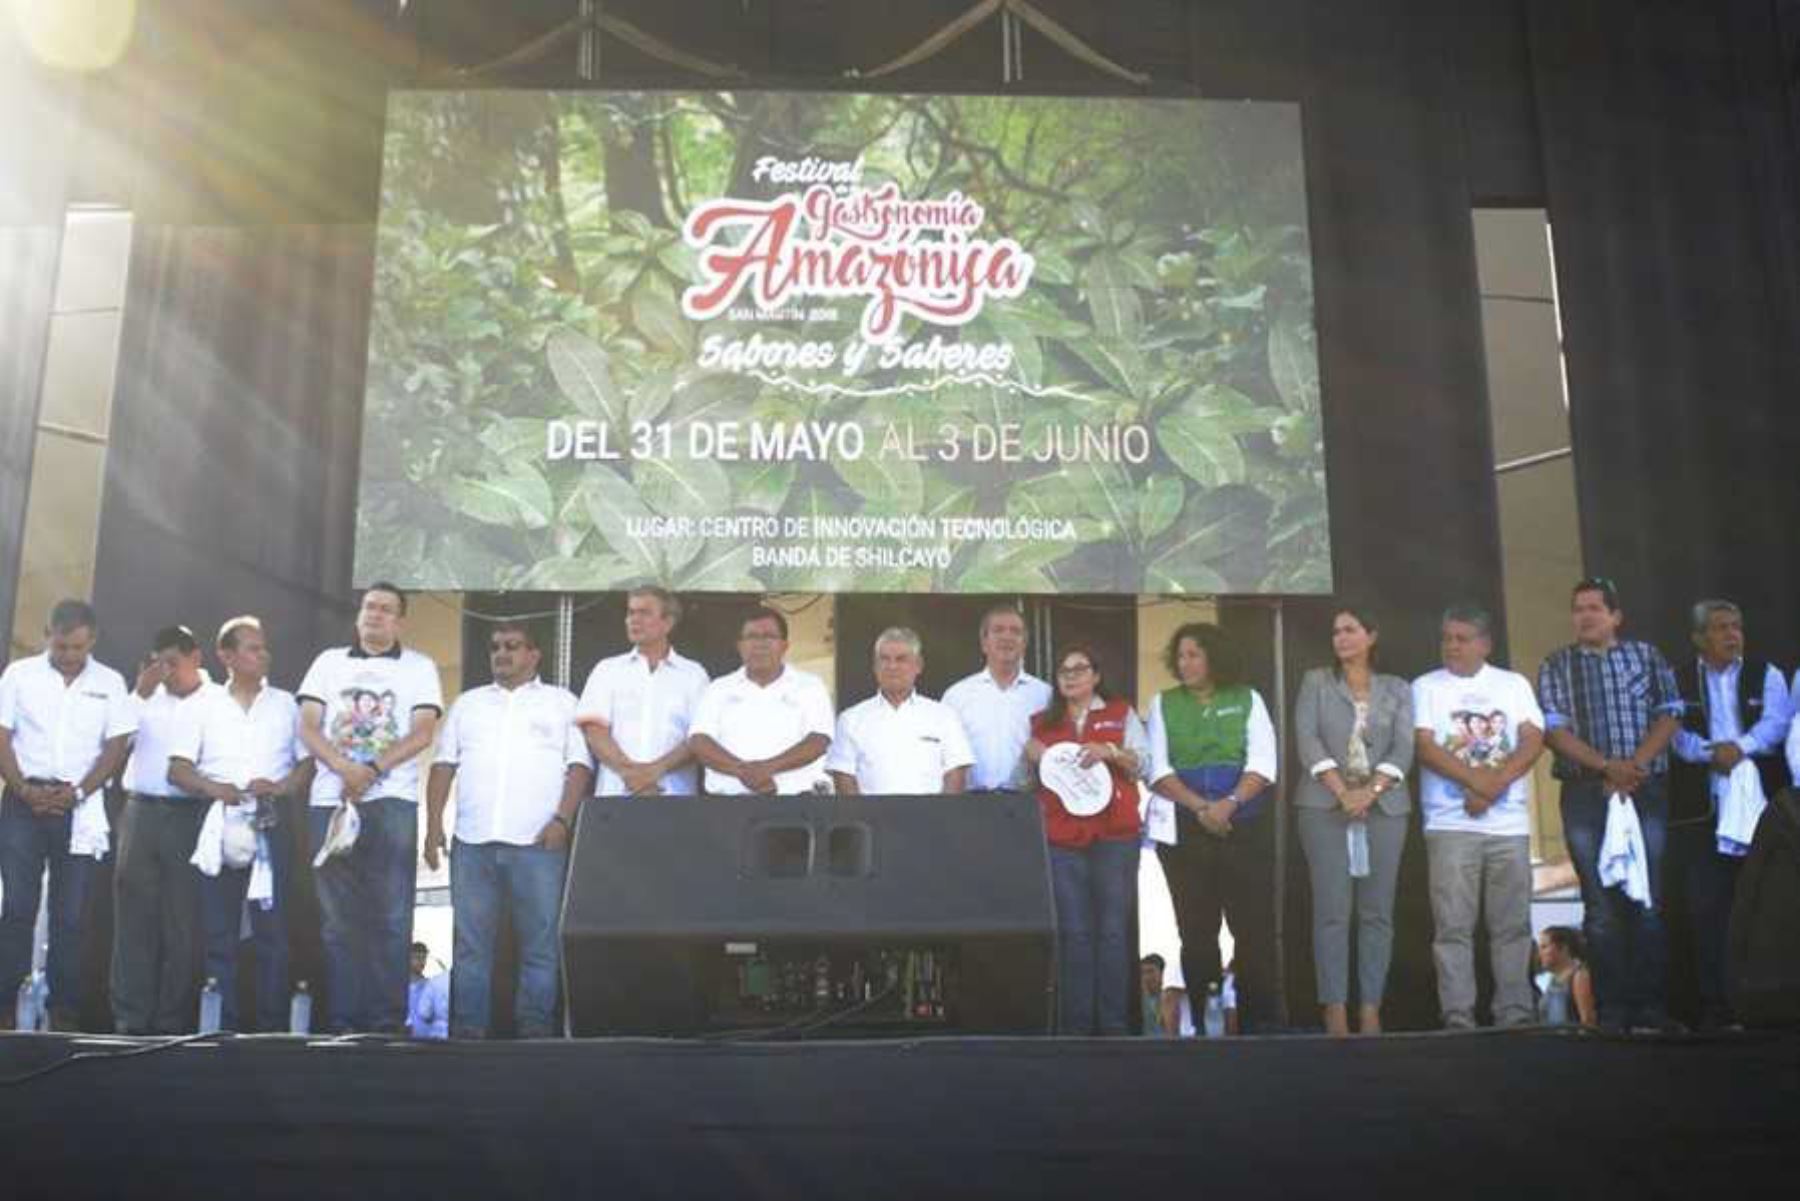 El Ministerio de Comercio Exterior y Turismo (Mincetur) destacó hoy que más de 35,000 asistentes acudirán al Festival de la Gastronomía Amazónica “Sabores y Saberes”, que se inauguró hoy en la ciudad de Tarapoto, región San Martín, y que se extenderá hasta el próximo 3 de junio.